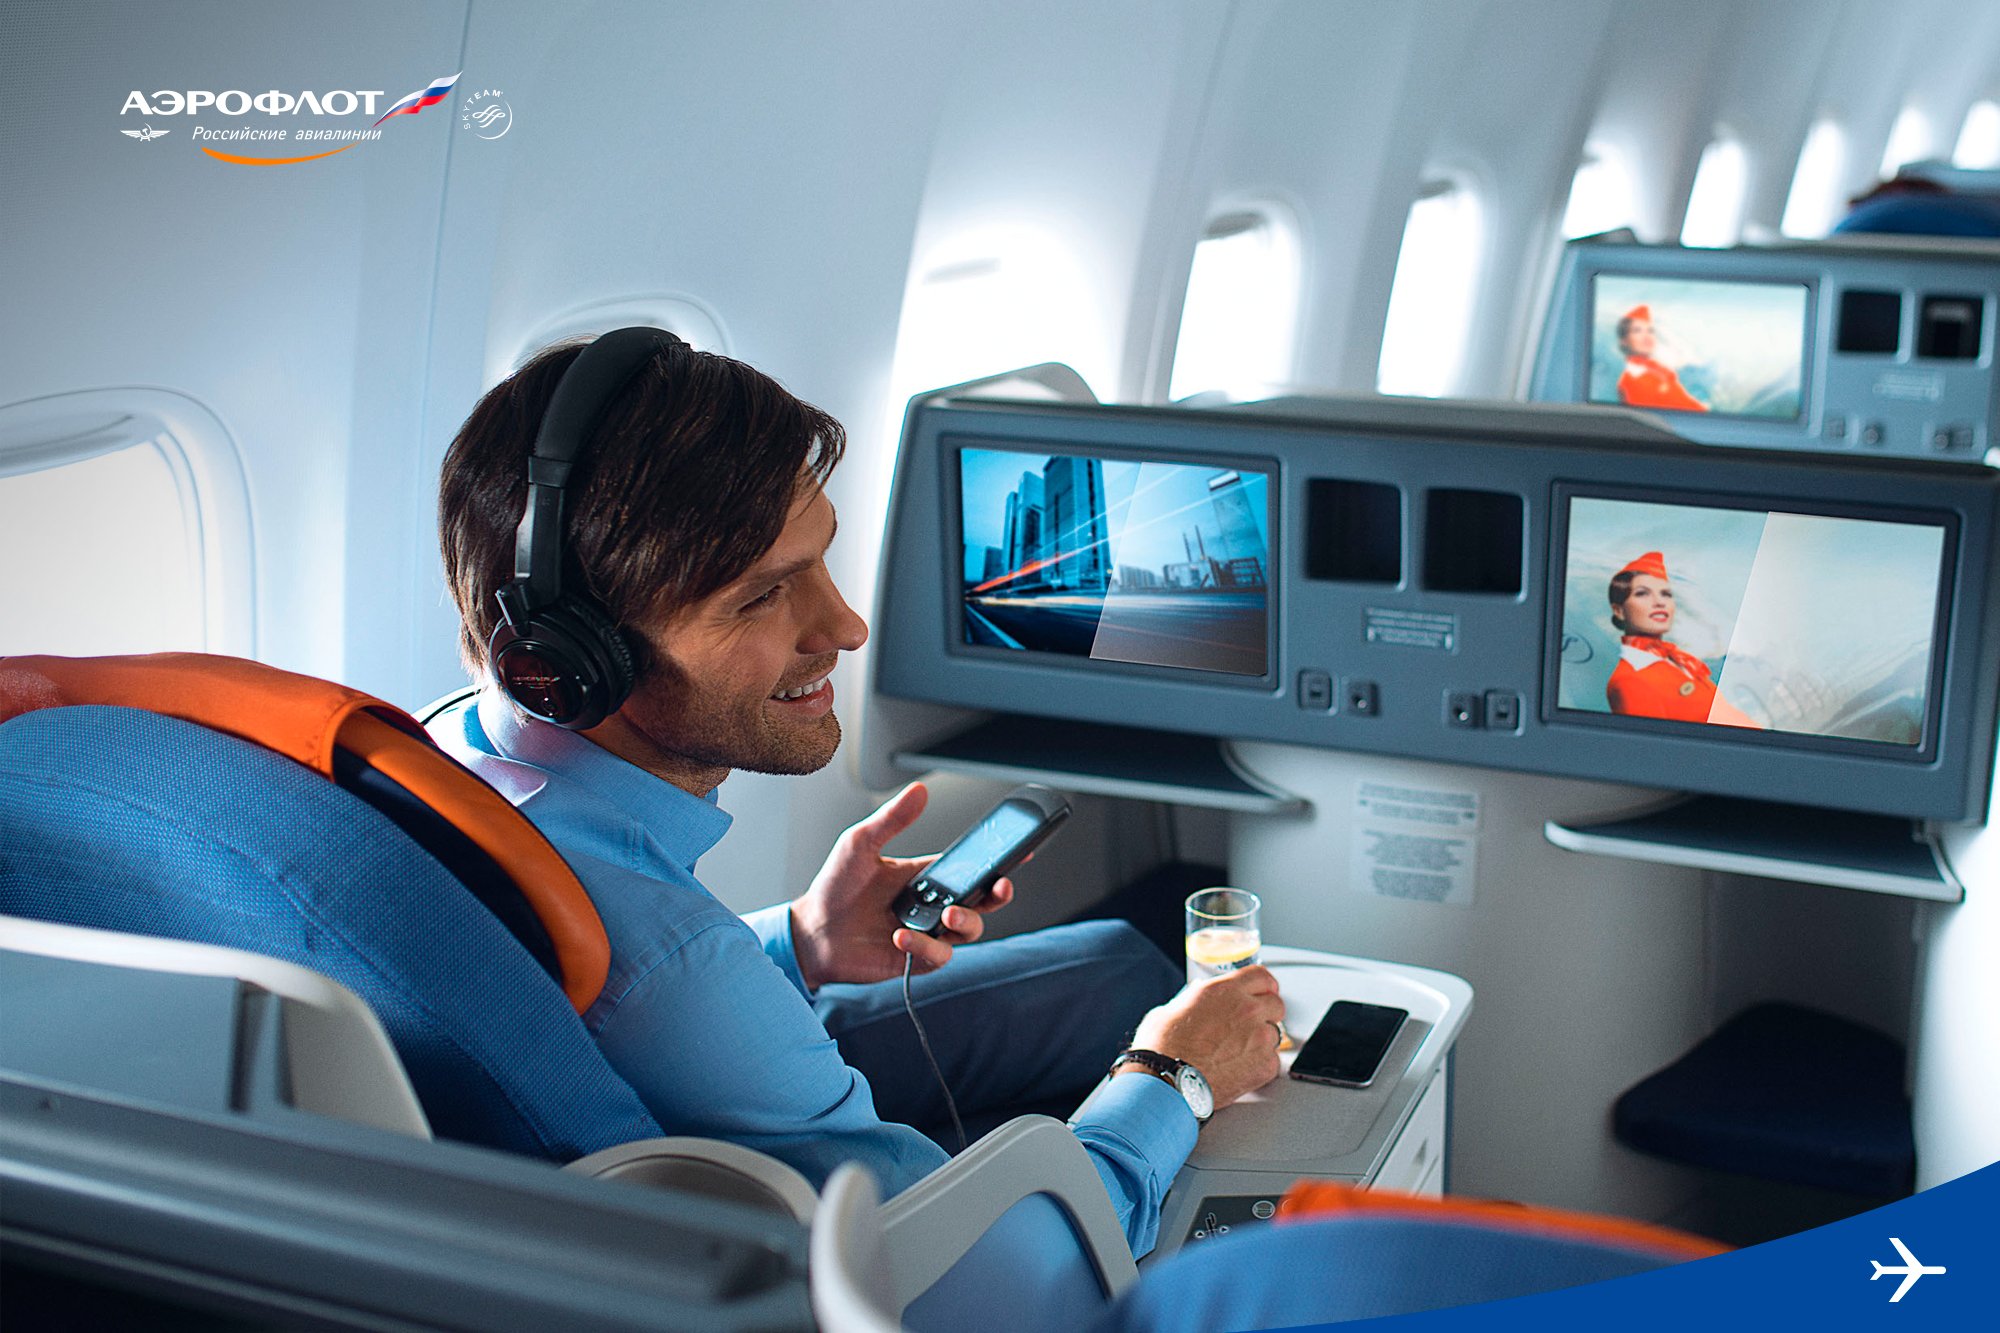 Сервис развлечения. Экран в самолете. Мультимедийная система в самолете. Аэрофлот пассажир бизнес класса. Монитор в самолете.